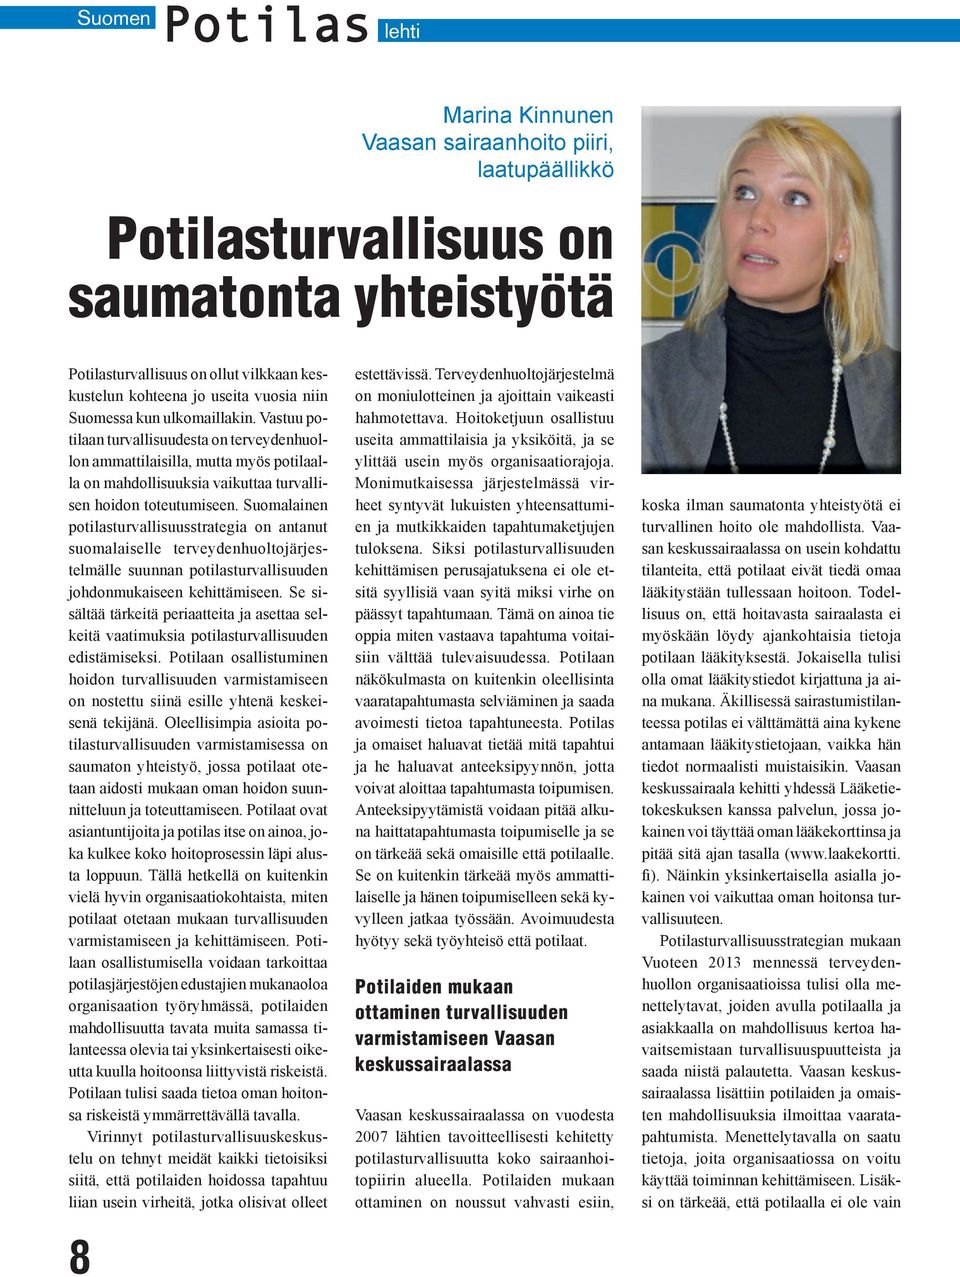 Suomalainen potilasturvallisuusstrategia on antanut suomalaiselle terveydenhuoltojärjestelmälle suunnan potilasturvallisuuden johdonmukaiseen kehittämiseen.